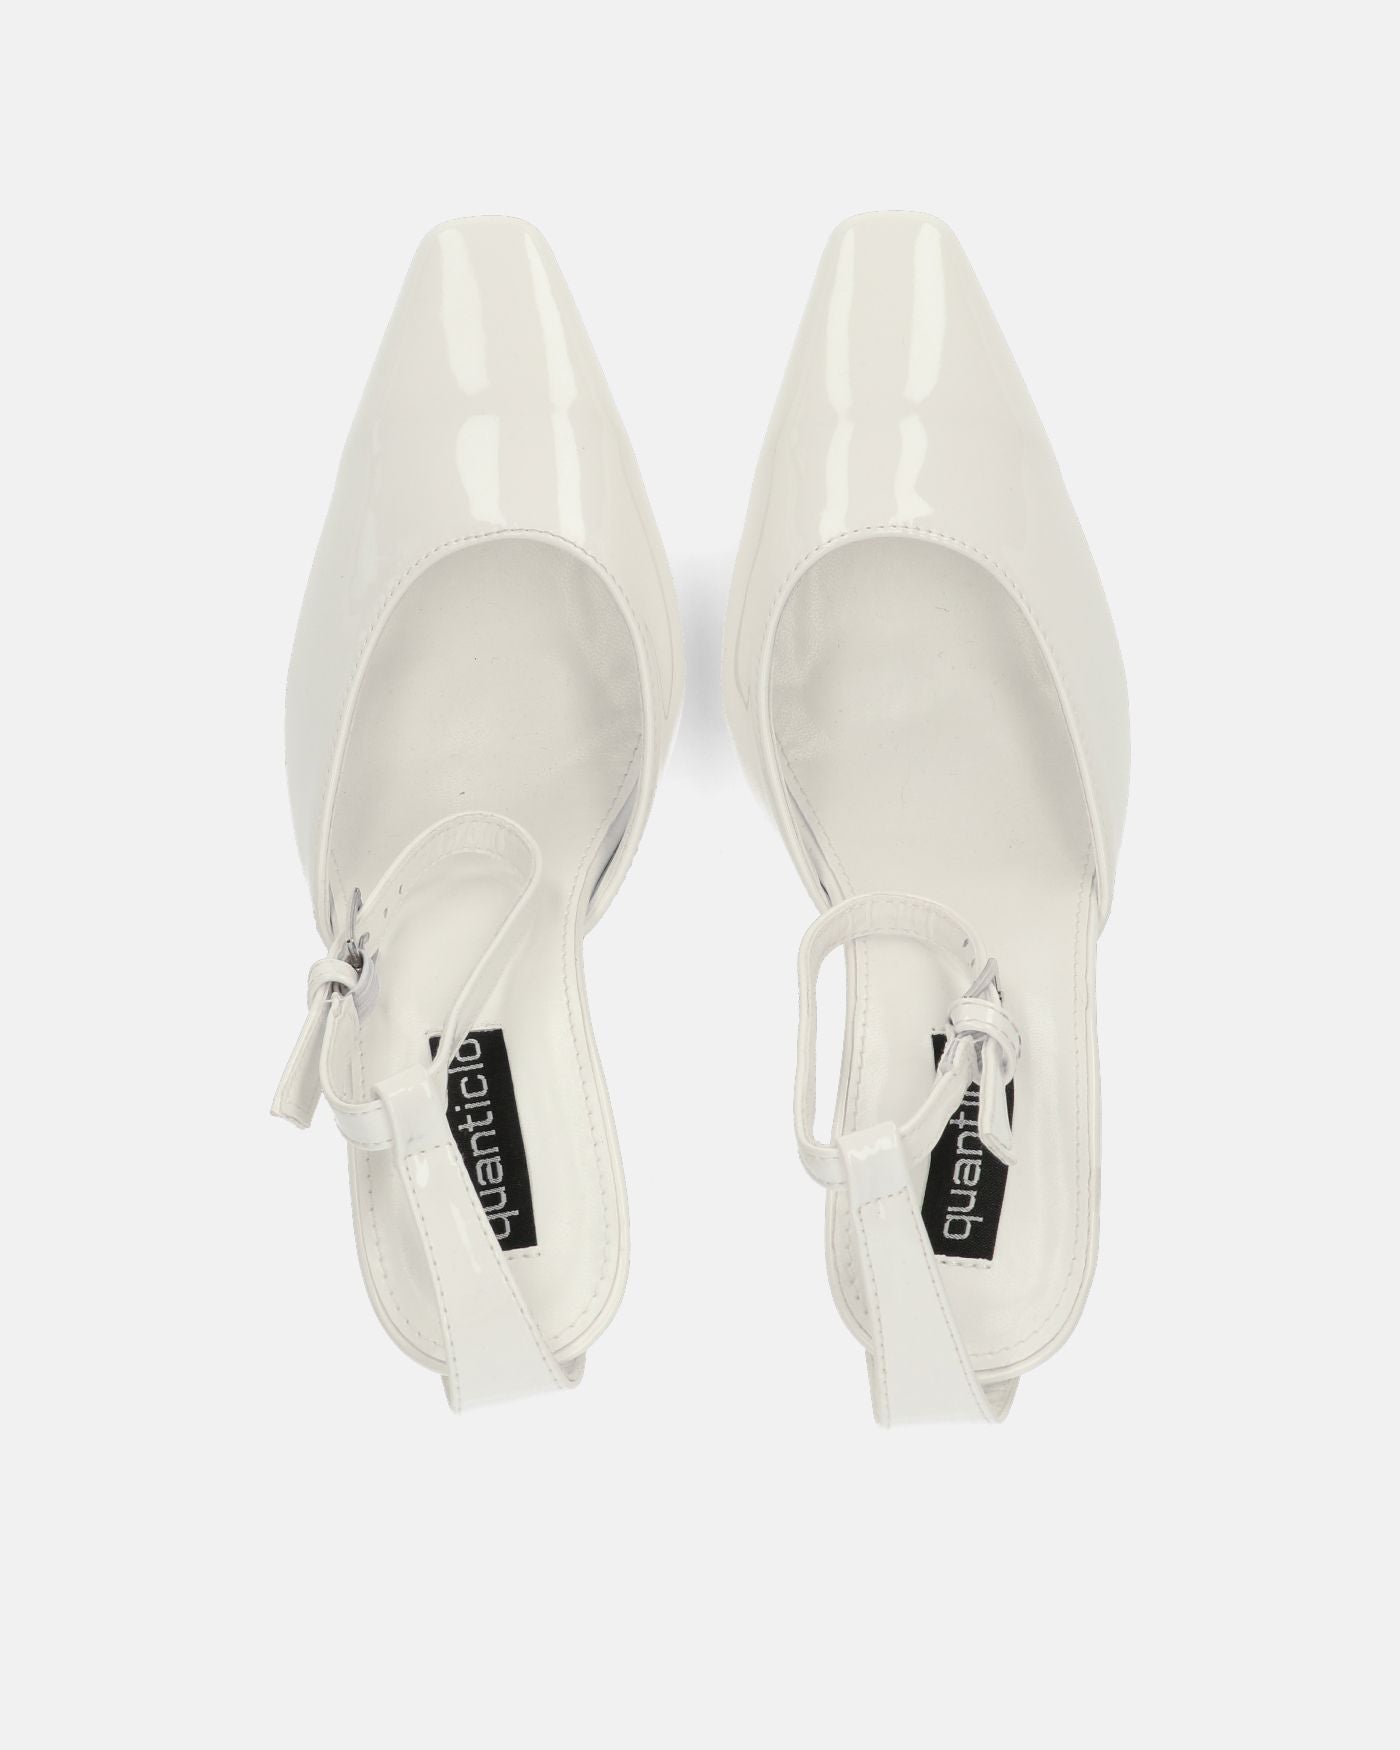 LUDWIKA - chaussures à talon et bride en glassy blanc